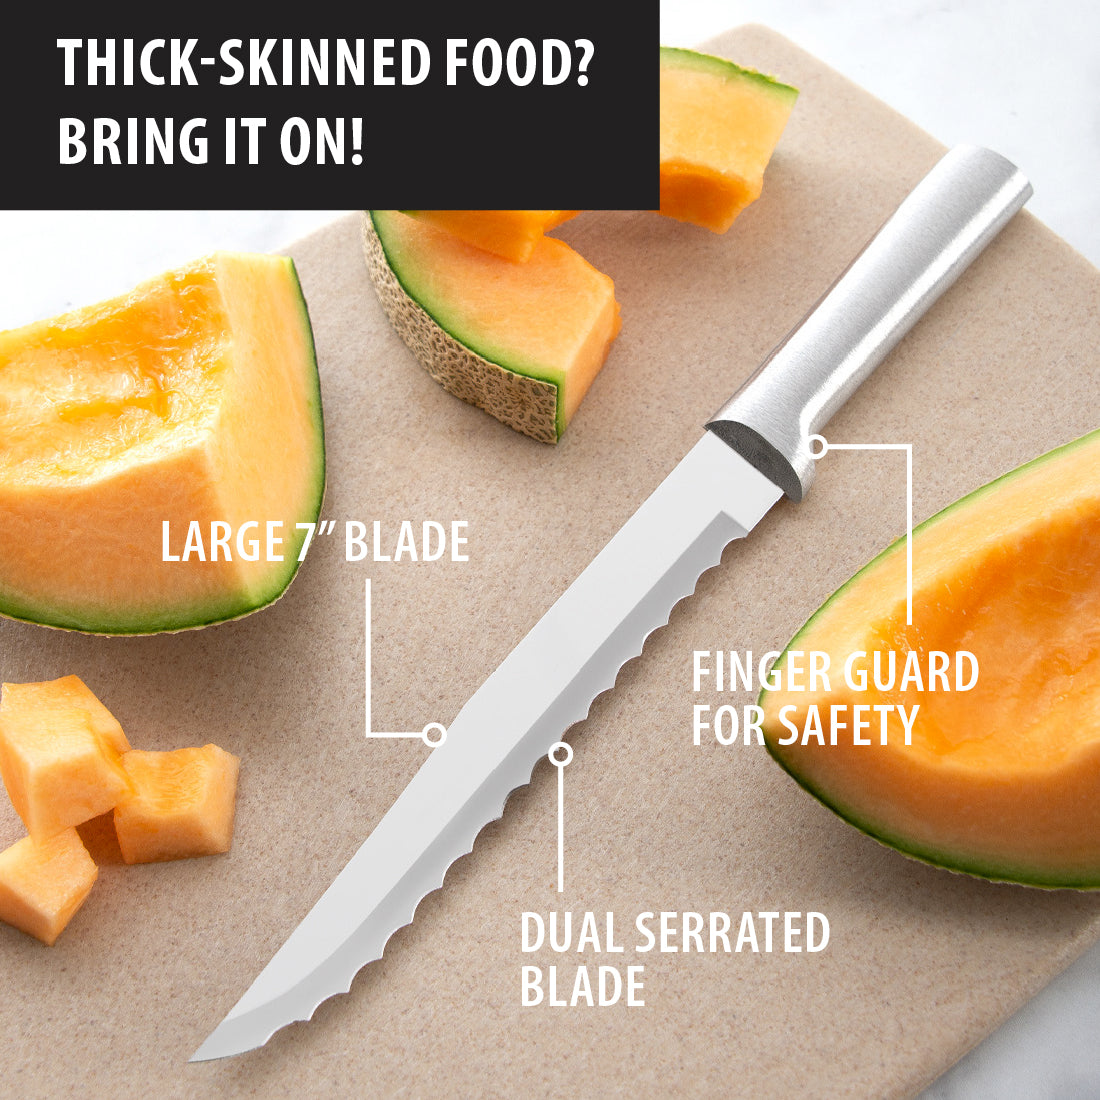 Melon scoop double - Kitchen equipment - Condito